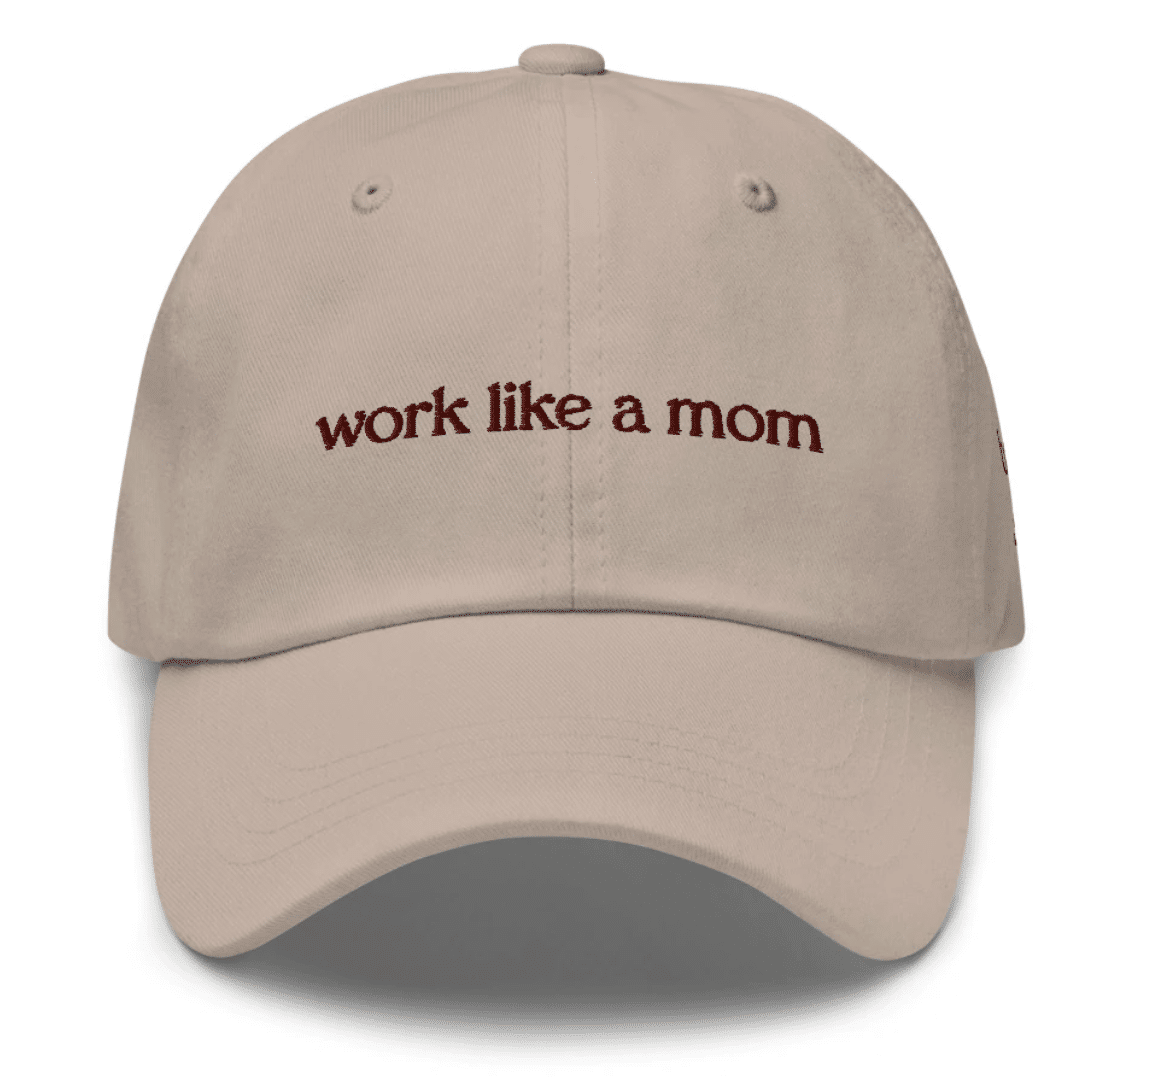 work like a mom